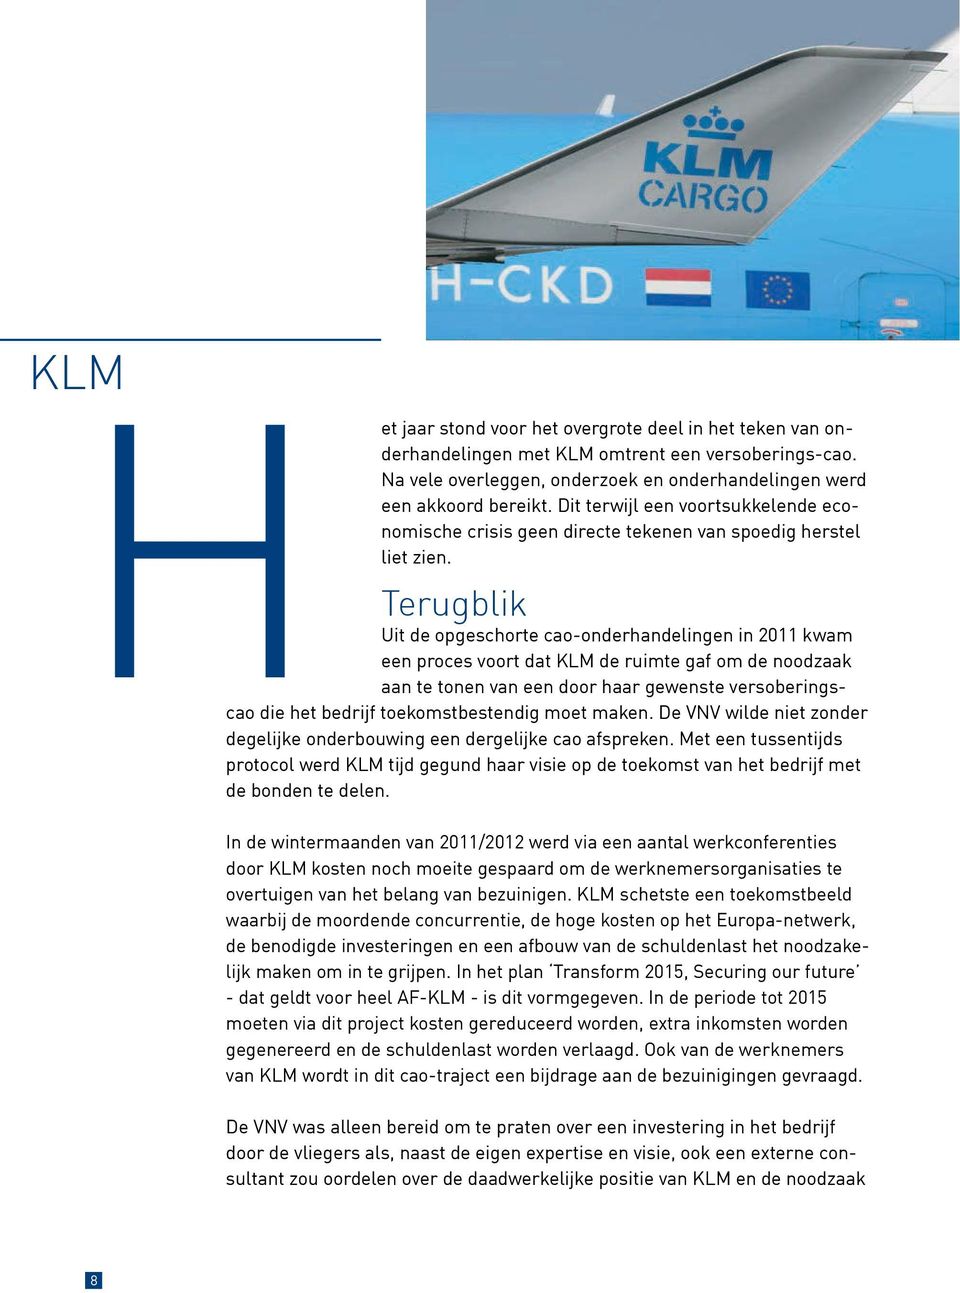 Terugblik Uit de opgeschorte cao-onderhandelingen in 2011 kwam een proces voort dat KLM de ruimte gaf om de noodzaak aan te tonen van een door haar gewenste versoberingscao die het bedrijf